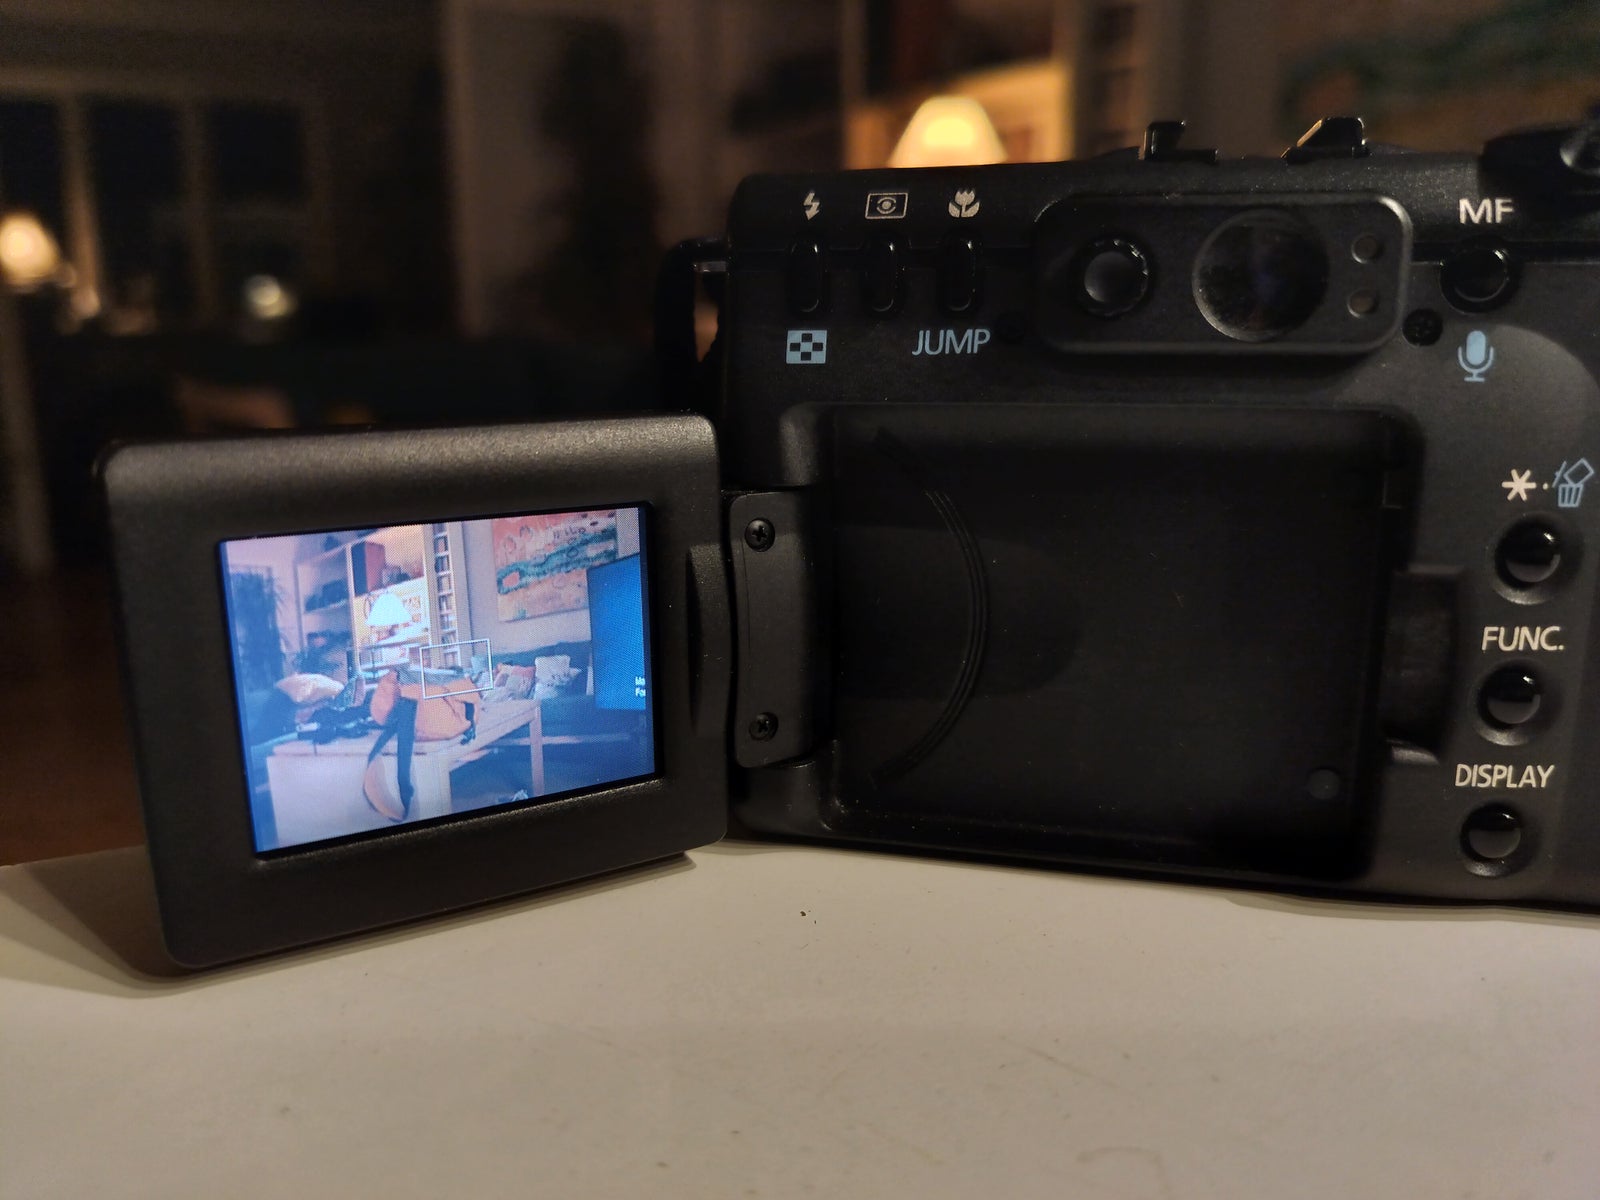 Canon, G5 (PowerShot), 5.0 megapixels